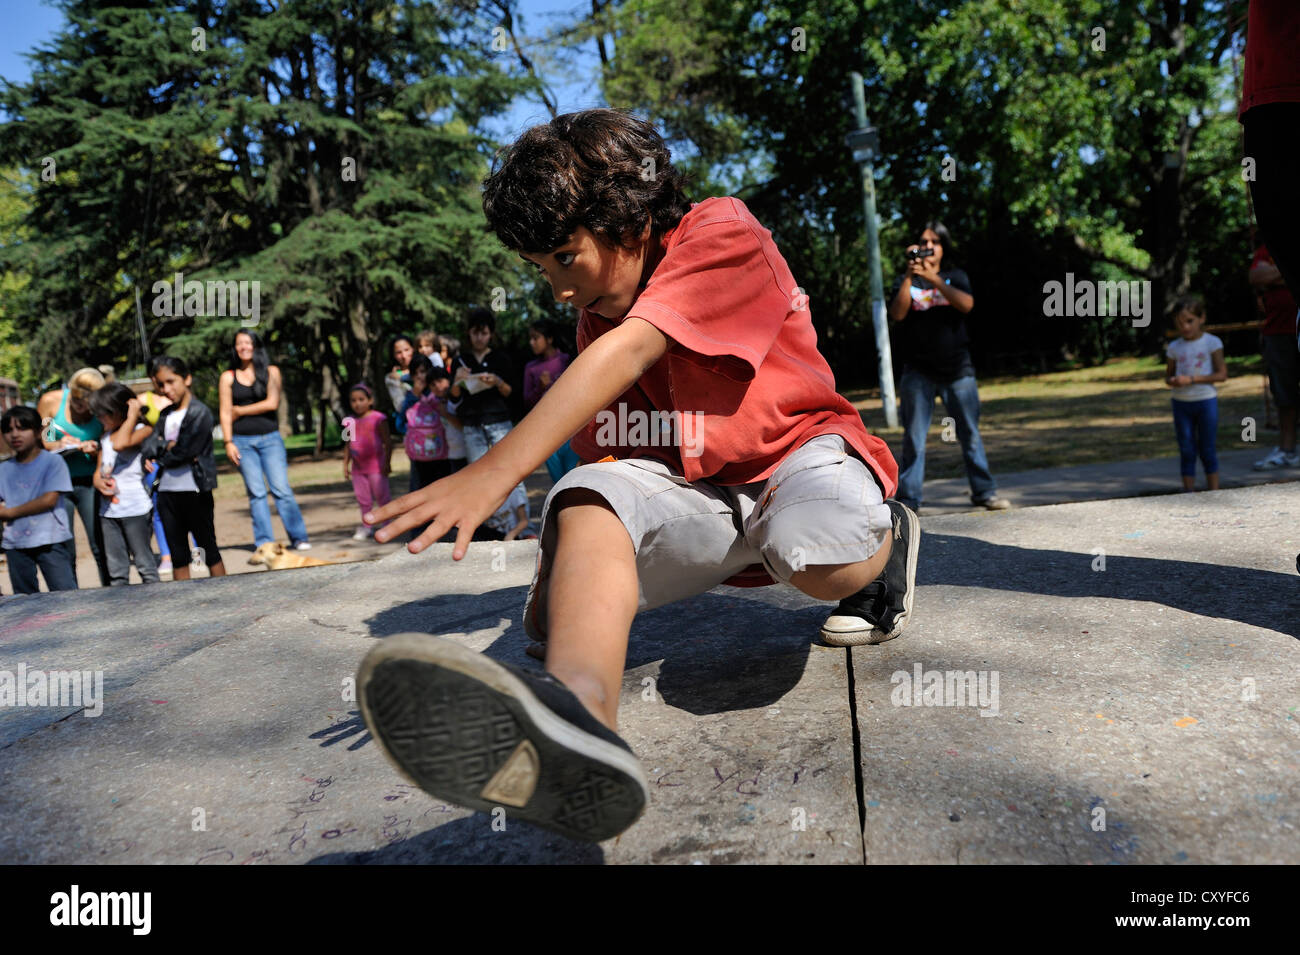 Boy danse au son de la musique hip-hop, street dance, de l'Organisation 'El Timbal' Culebron Cuartel V, Moreno, Buenos Aires, Argentine Banque D'Images